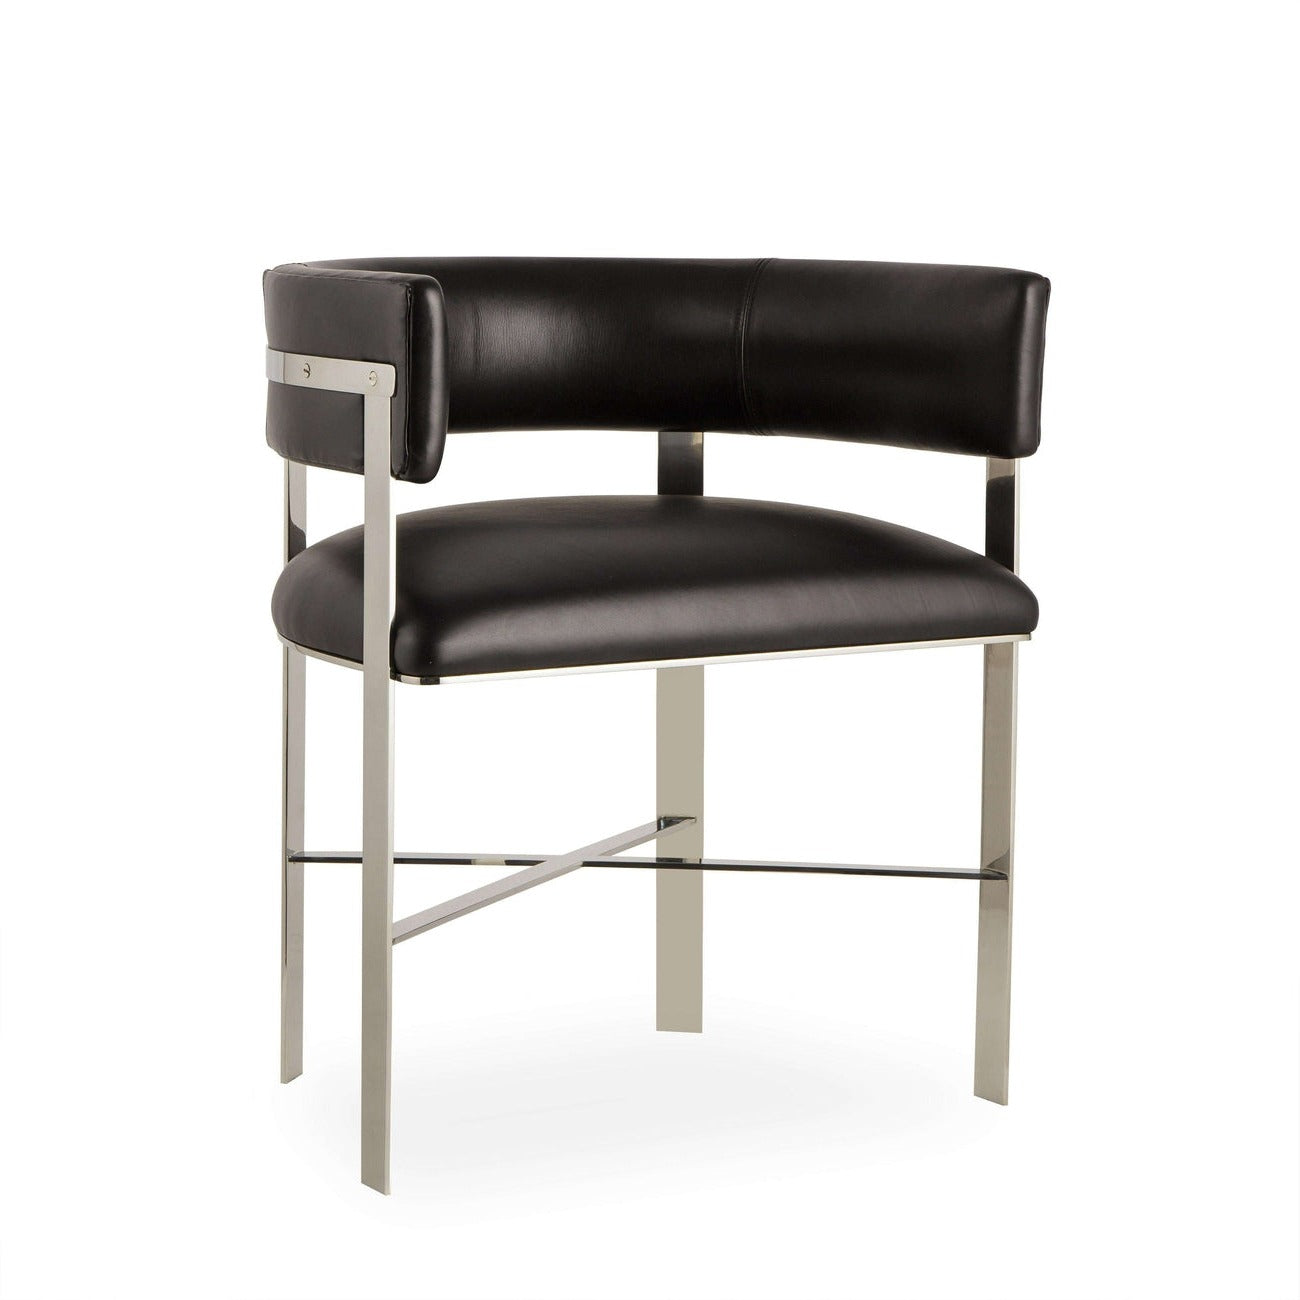 Sonder, Kelly Hoppen Art Dining Chair - Black Leather/ Stainless Steel